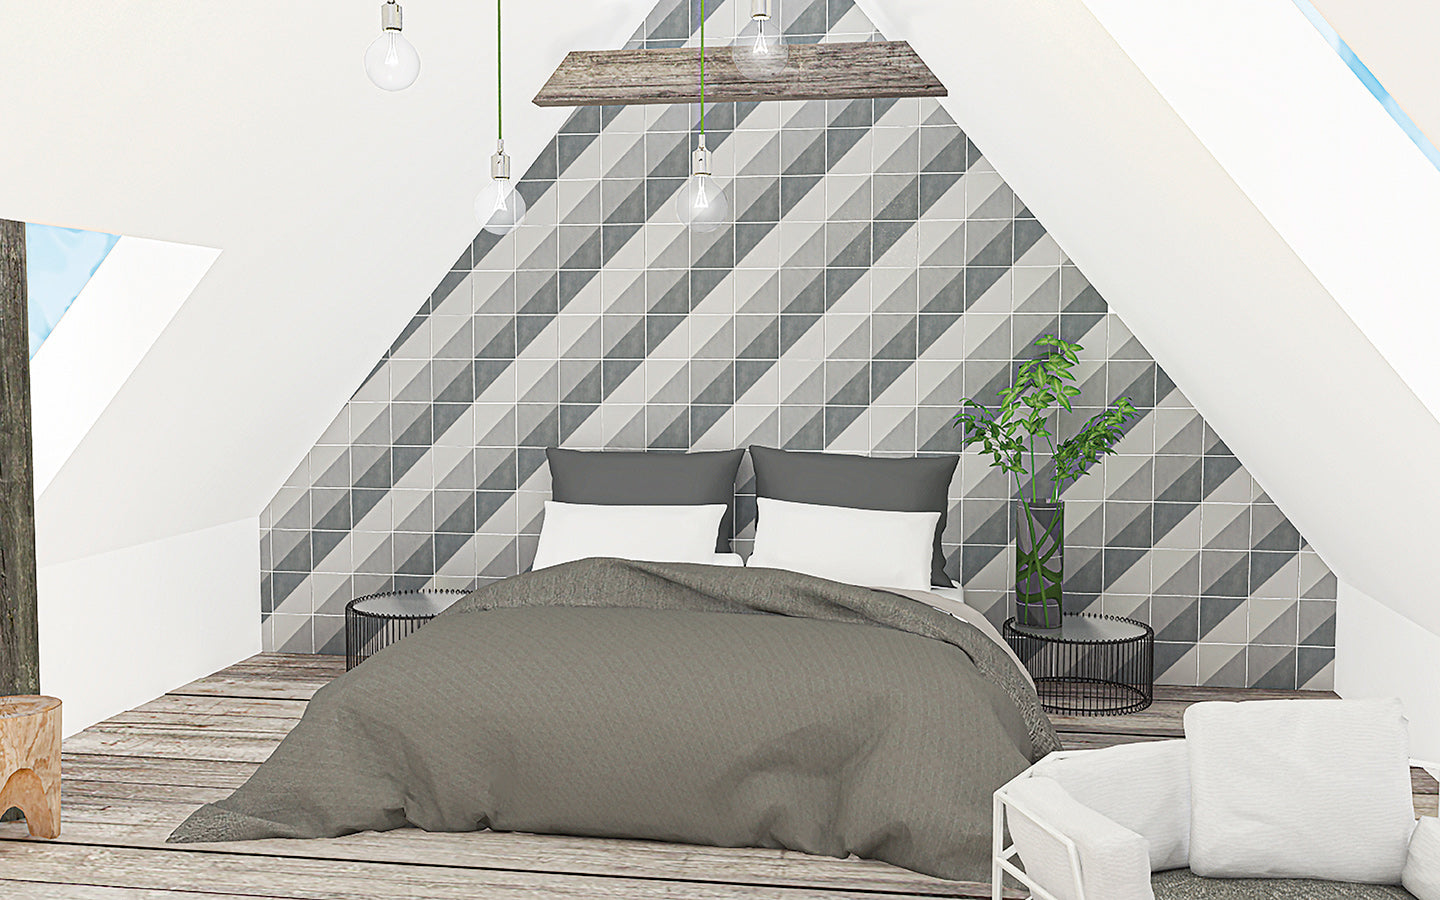 Bergen Wall Tile 20x20 | Grey Design 02 Matt